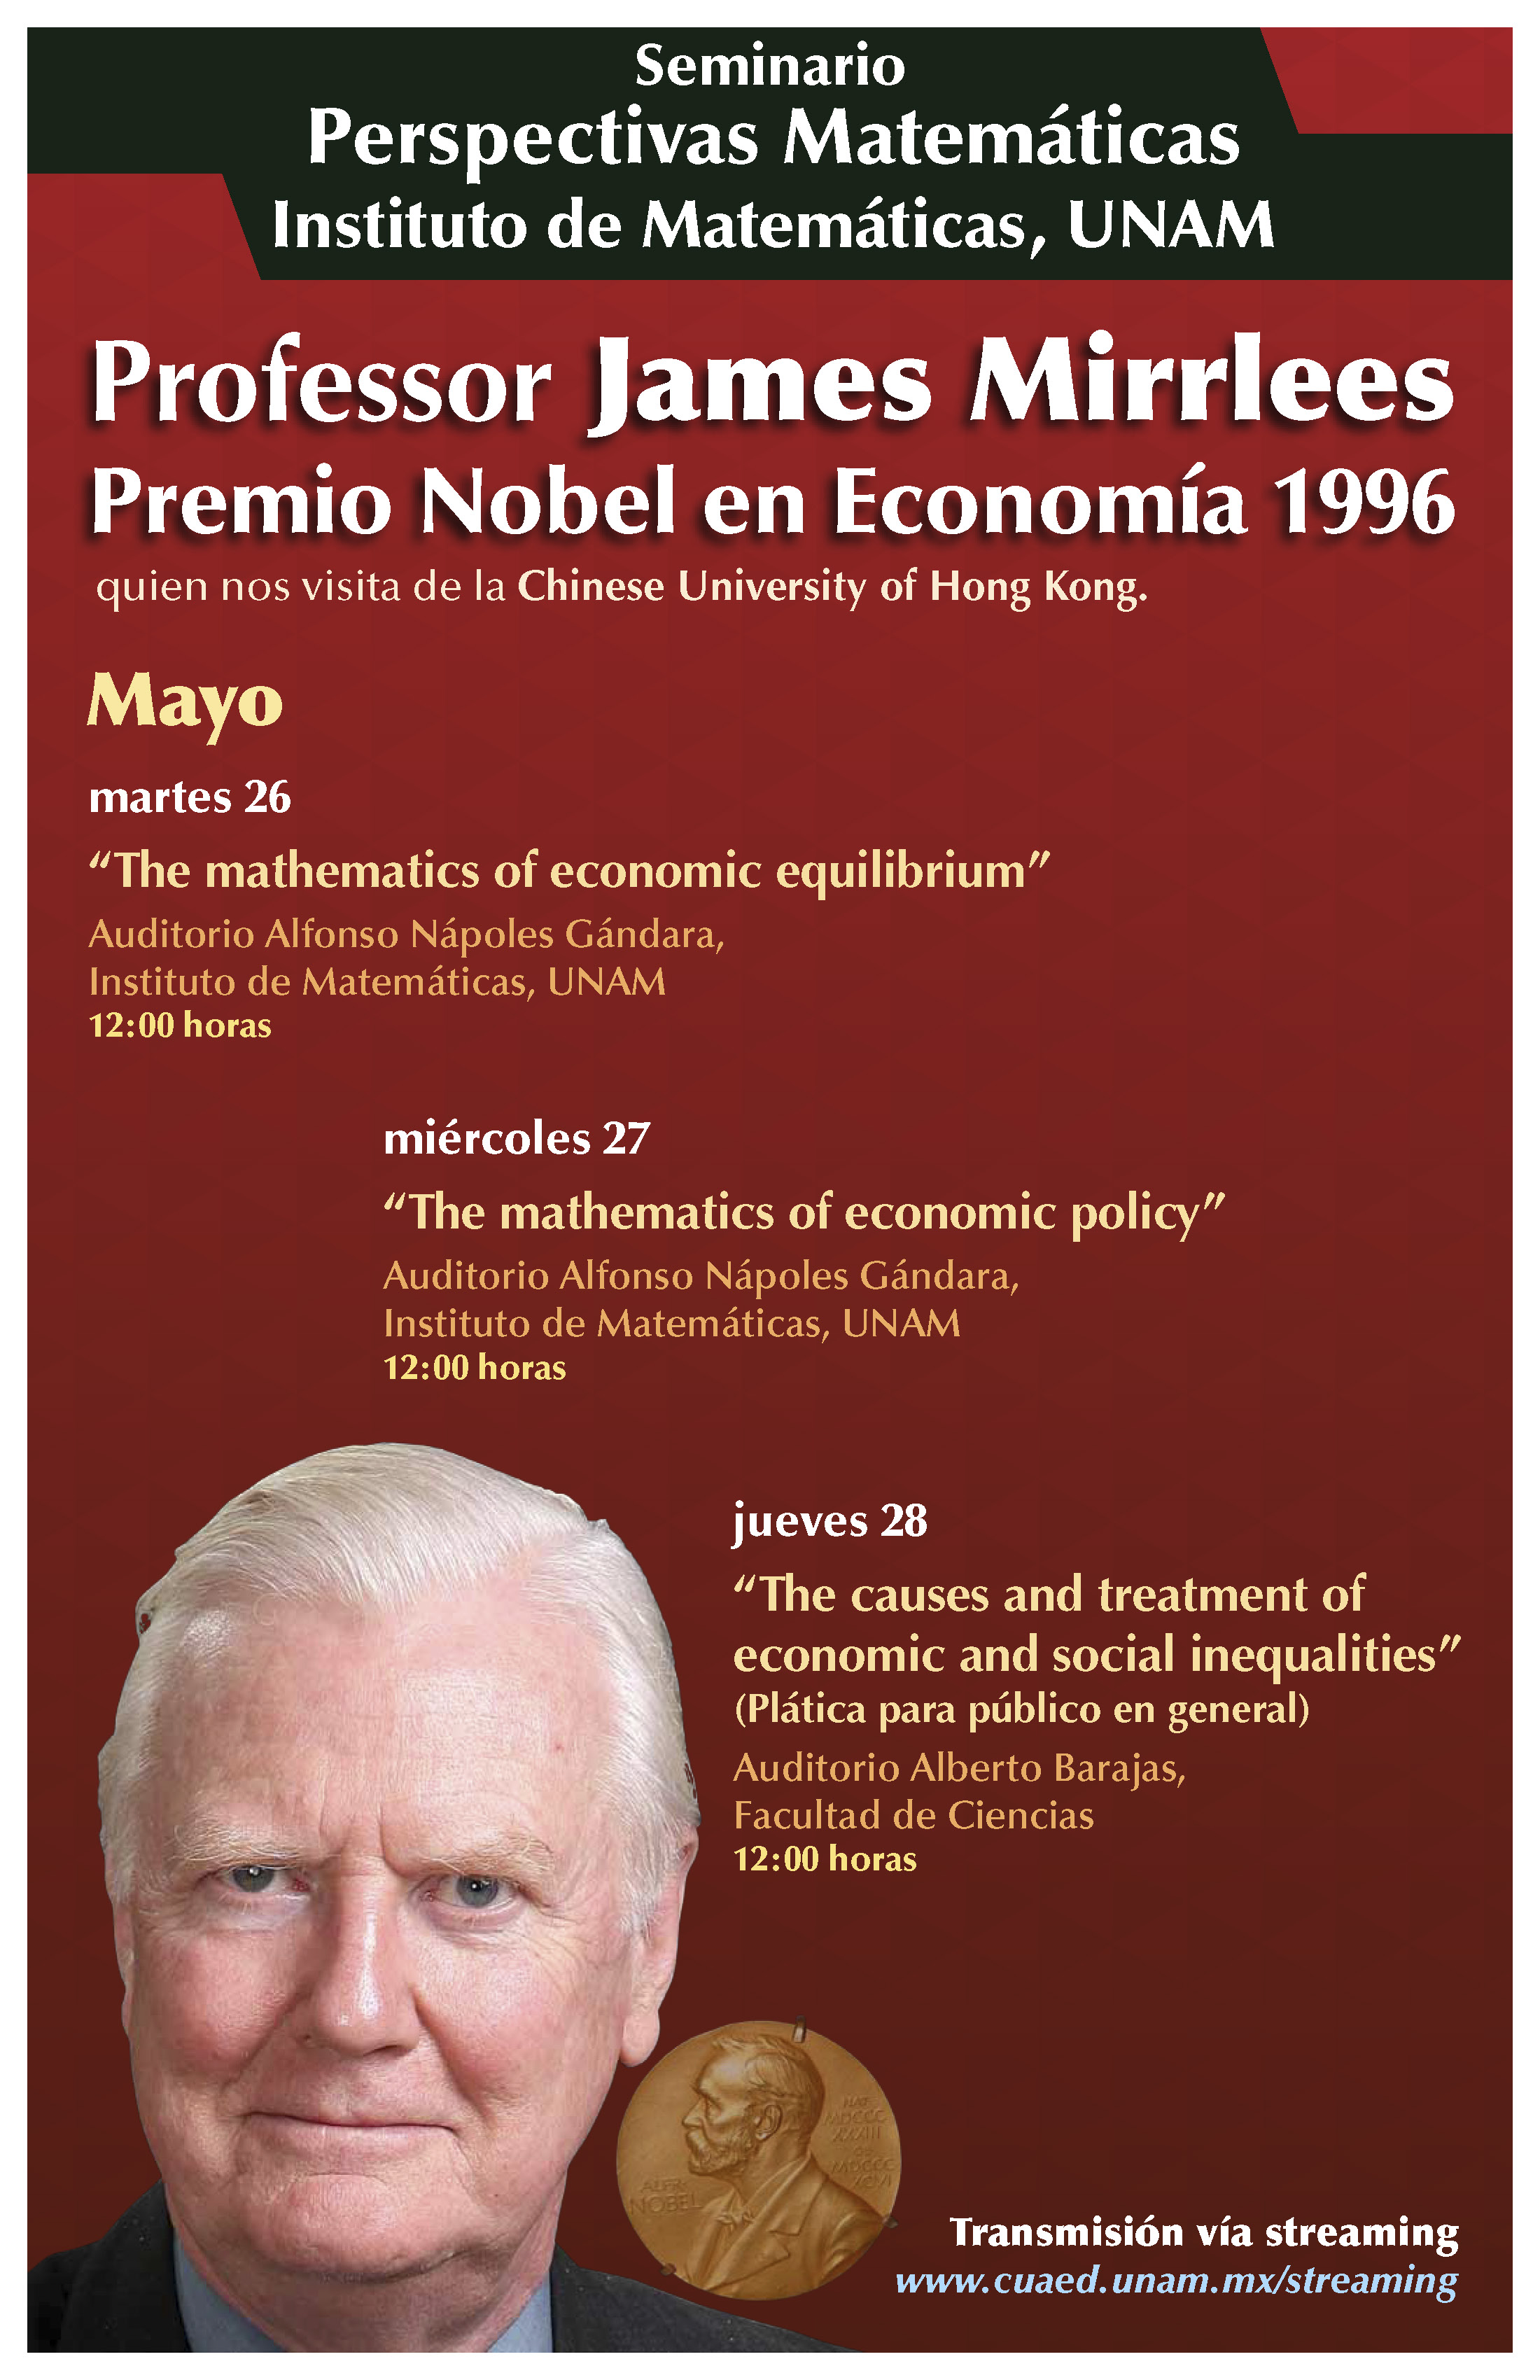 Perspectivas Matemáticas: Prof. James Mirrlees, Premio Nobel Economía, 1996